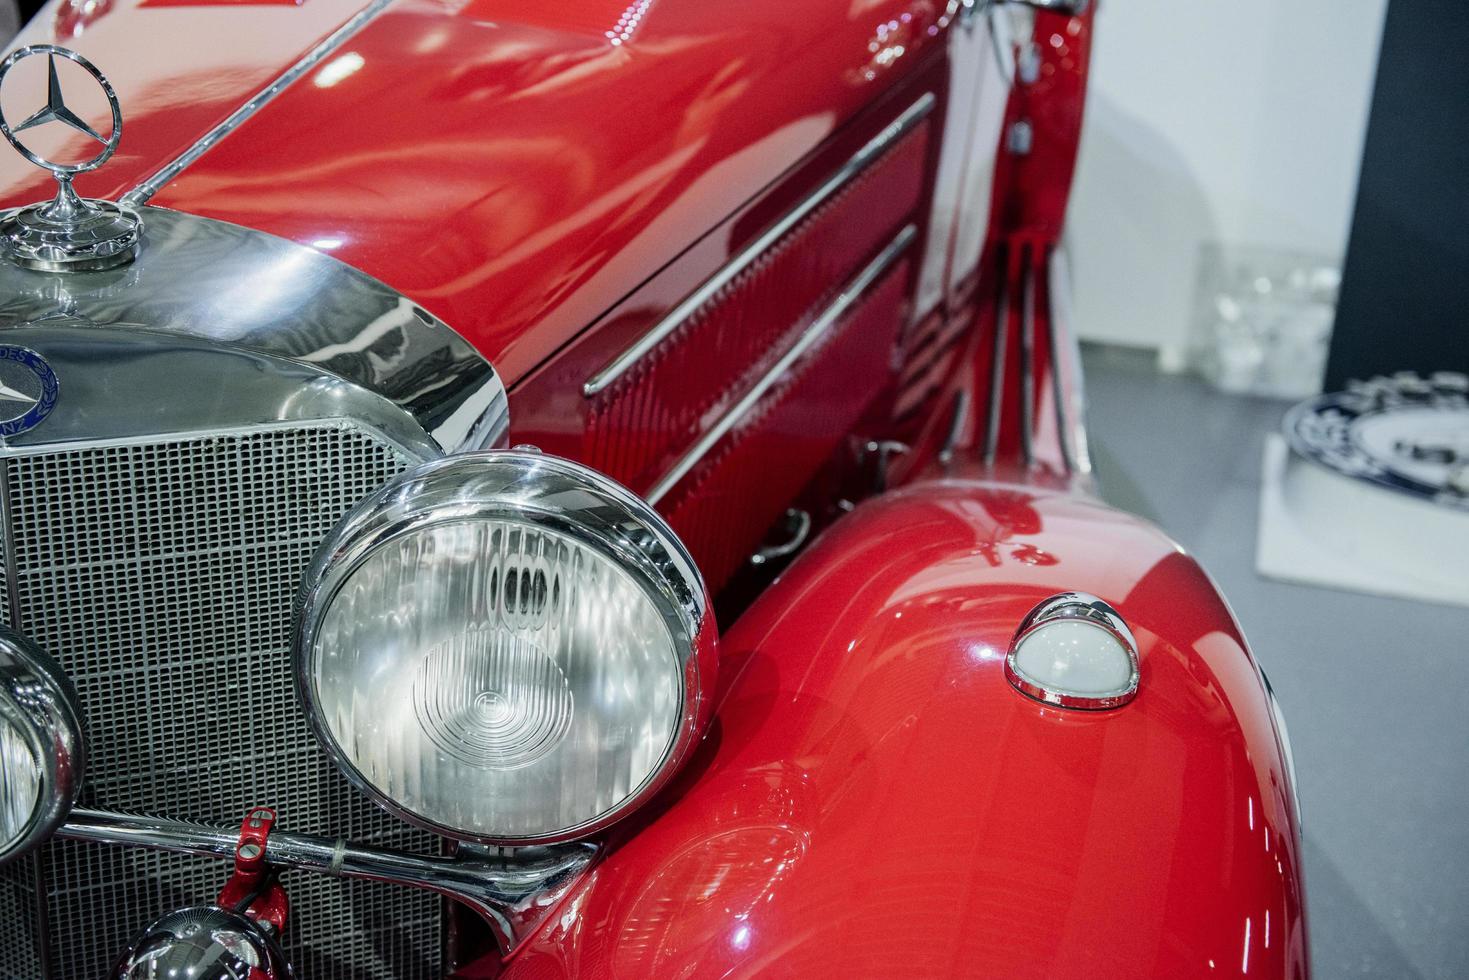 sinsheim, allemagne - 16 octobre 2018 musée technik. voiture de luxe rouge polie dans le style rétro photo